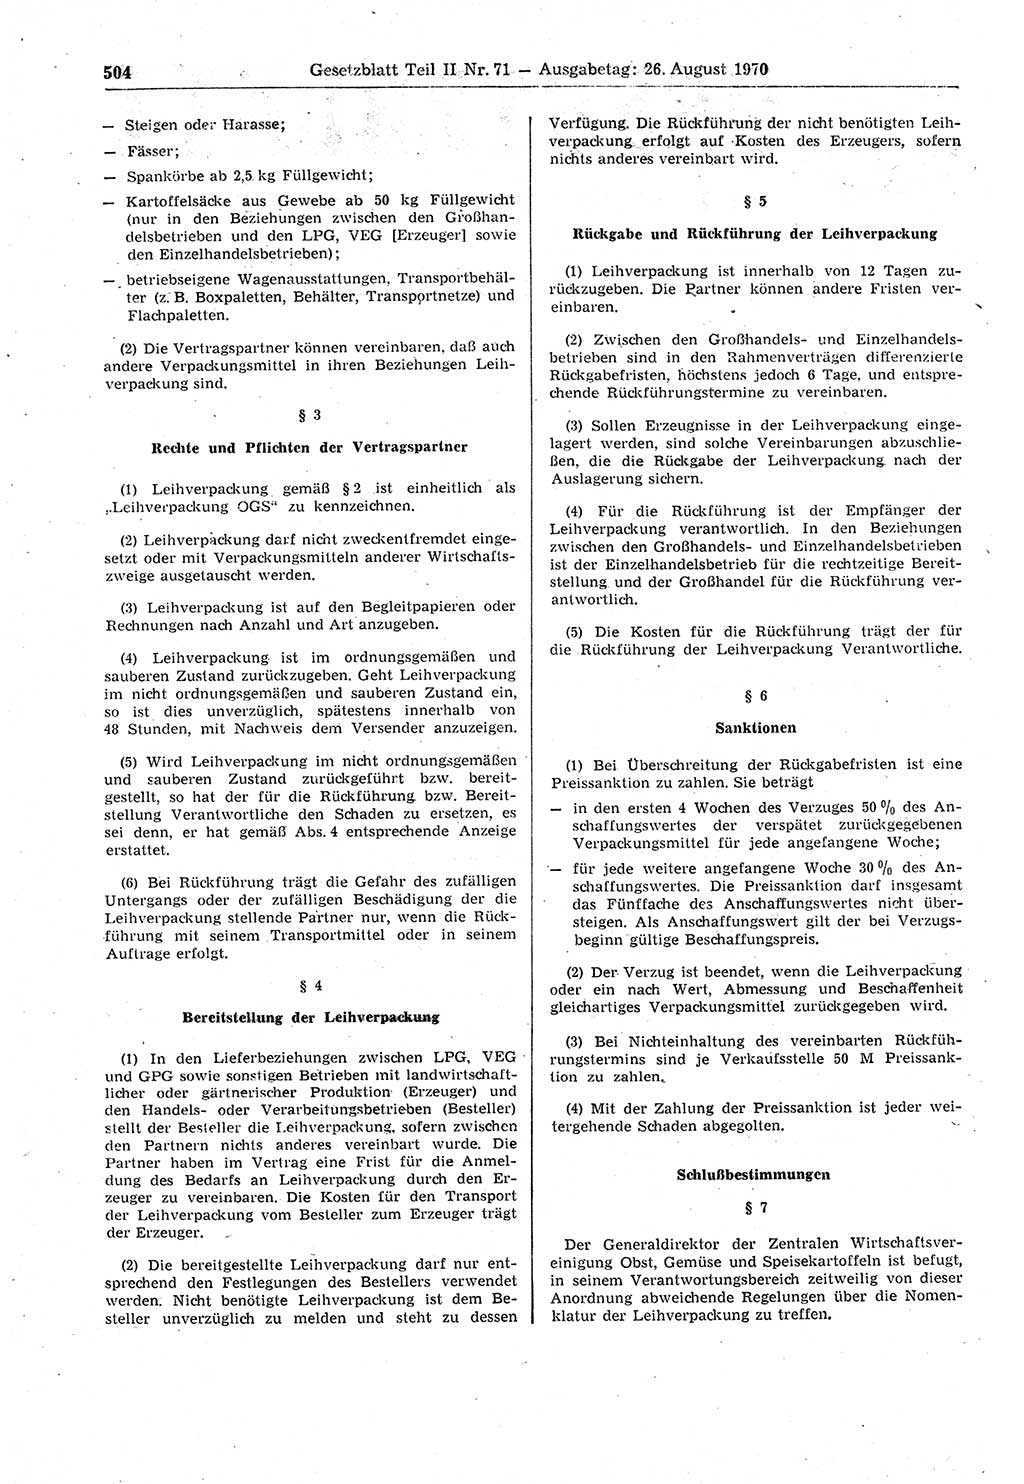 Gesetzblatt (GBl.) der Deutschen Demokratischen Republik (DDR) Teil ⅠⅠ 1970, Seite 504 (GBl. DDR ⅠⅠ 1970, S. 504)